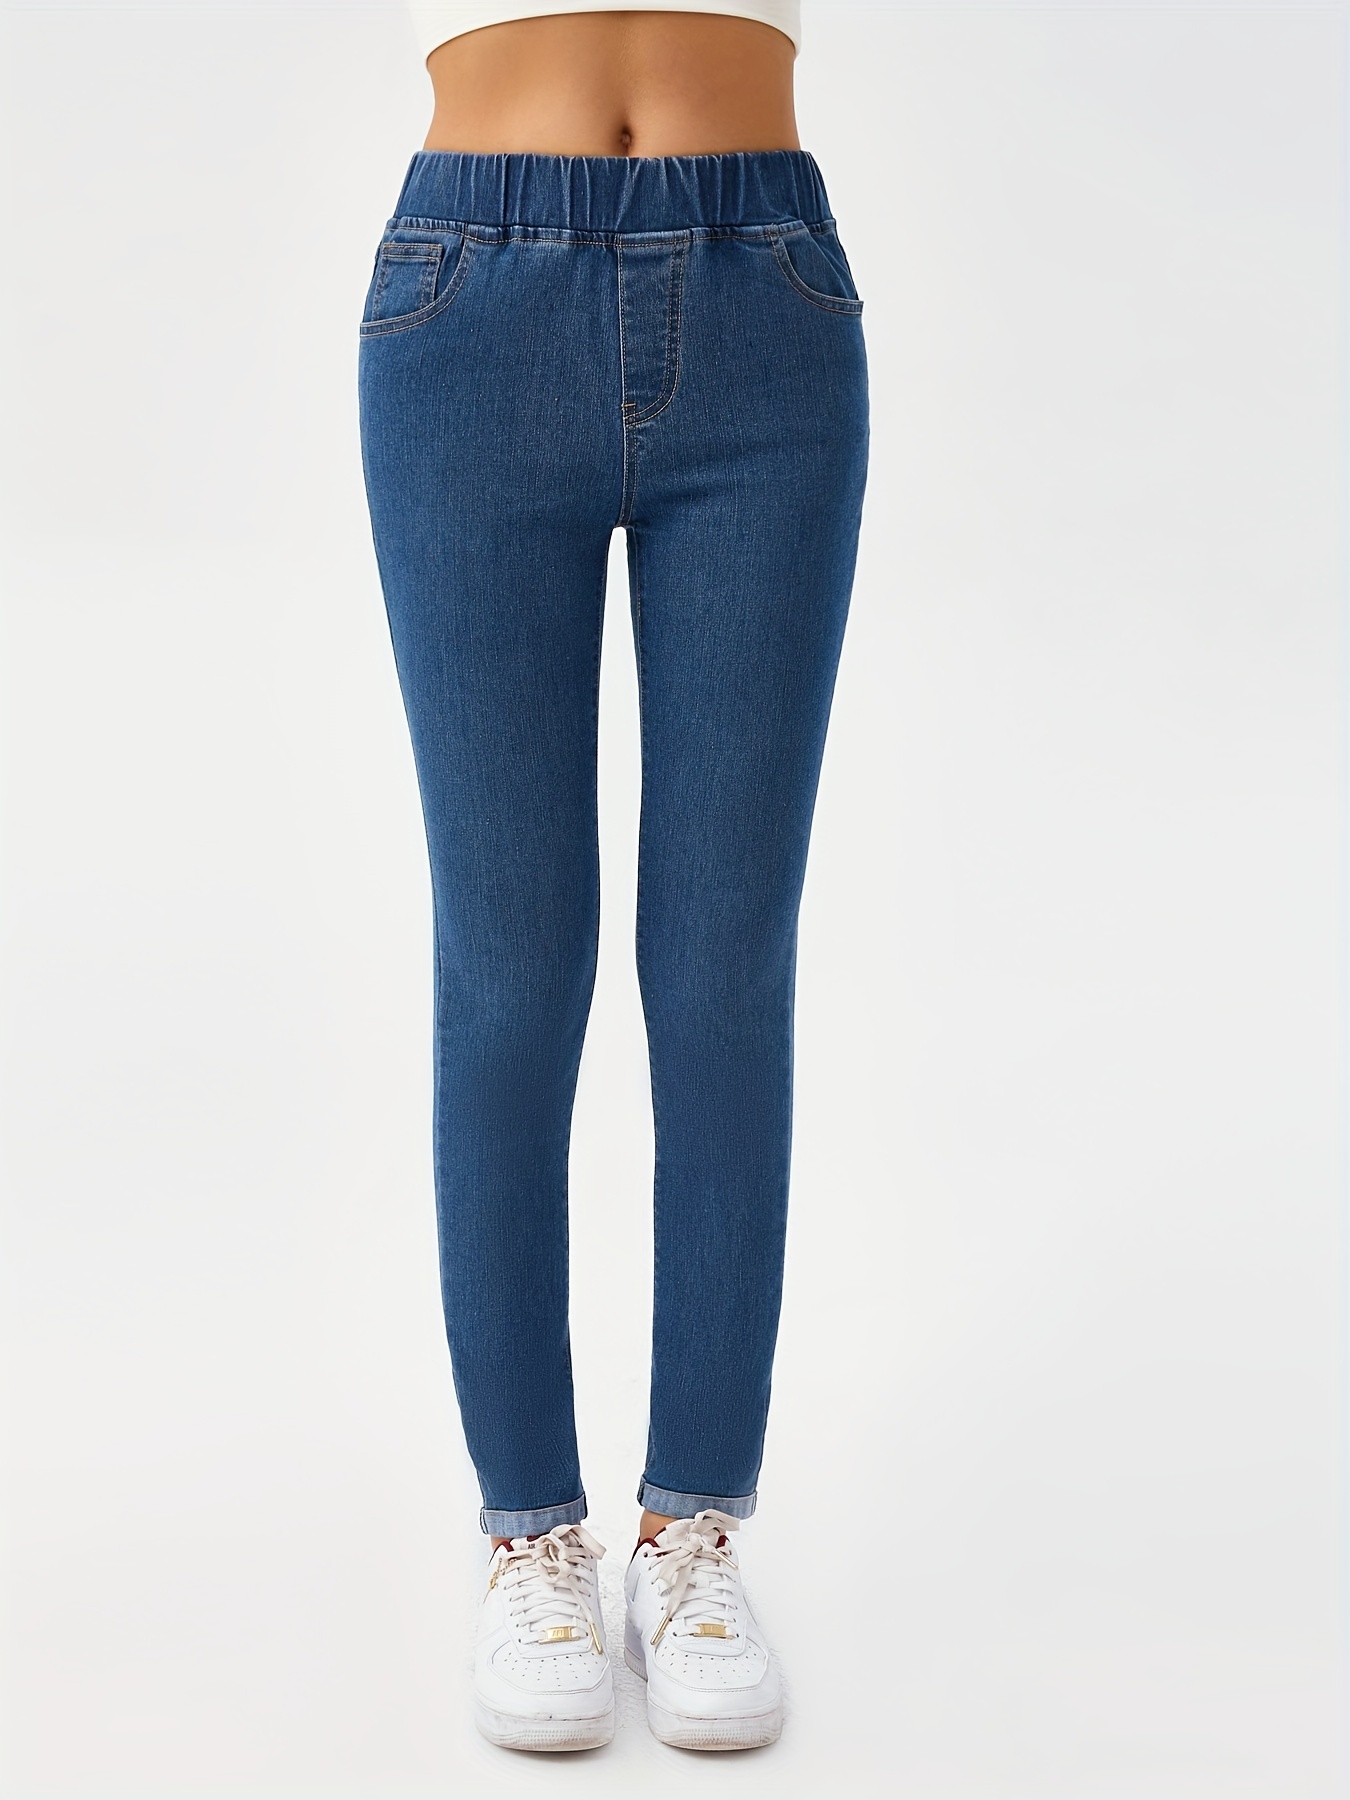 Women high Waist Jeans Slim Skinny Elastic Denim Pants Ladies